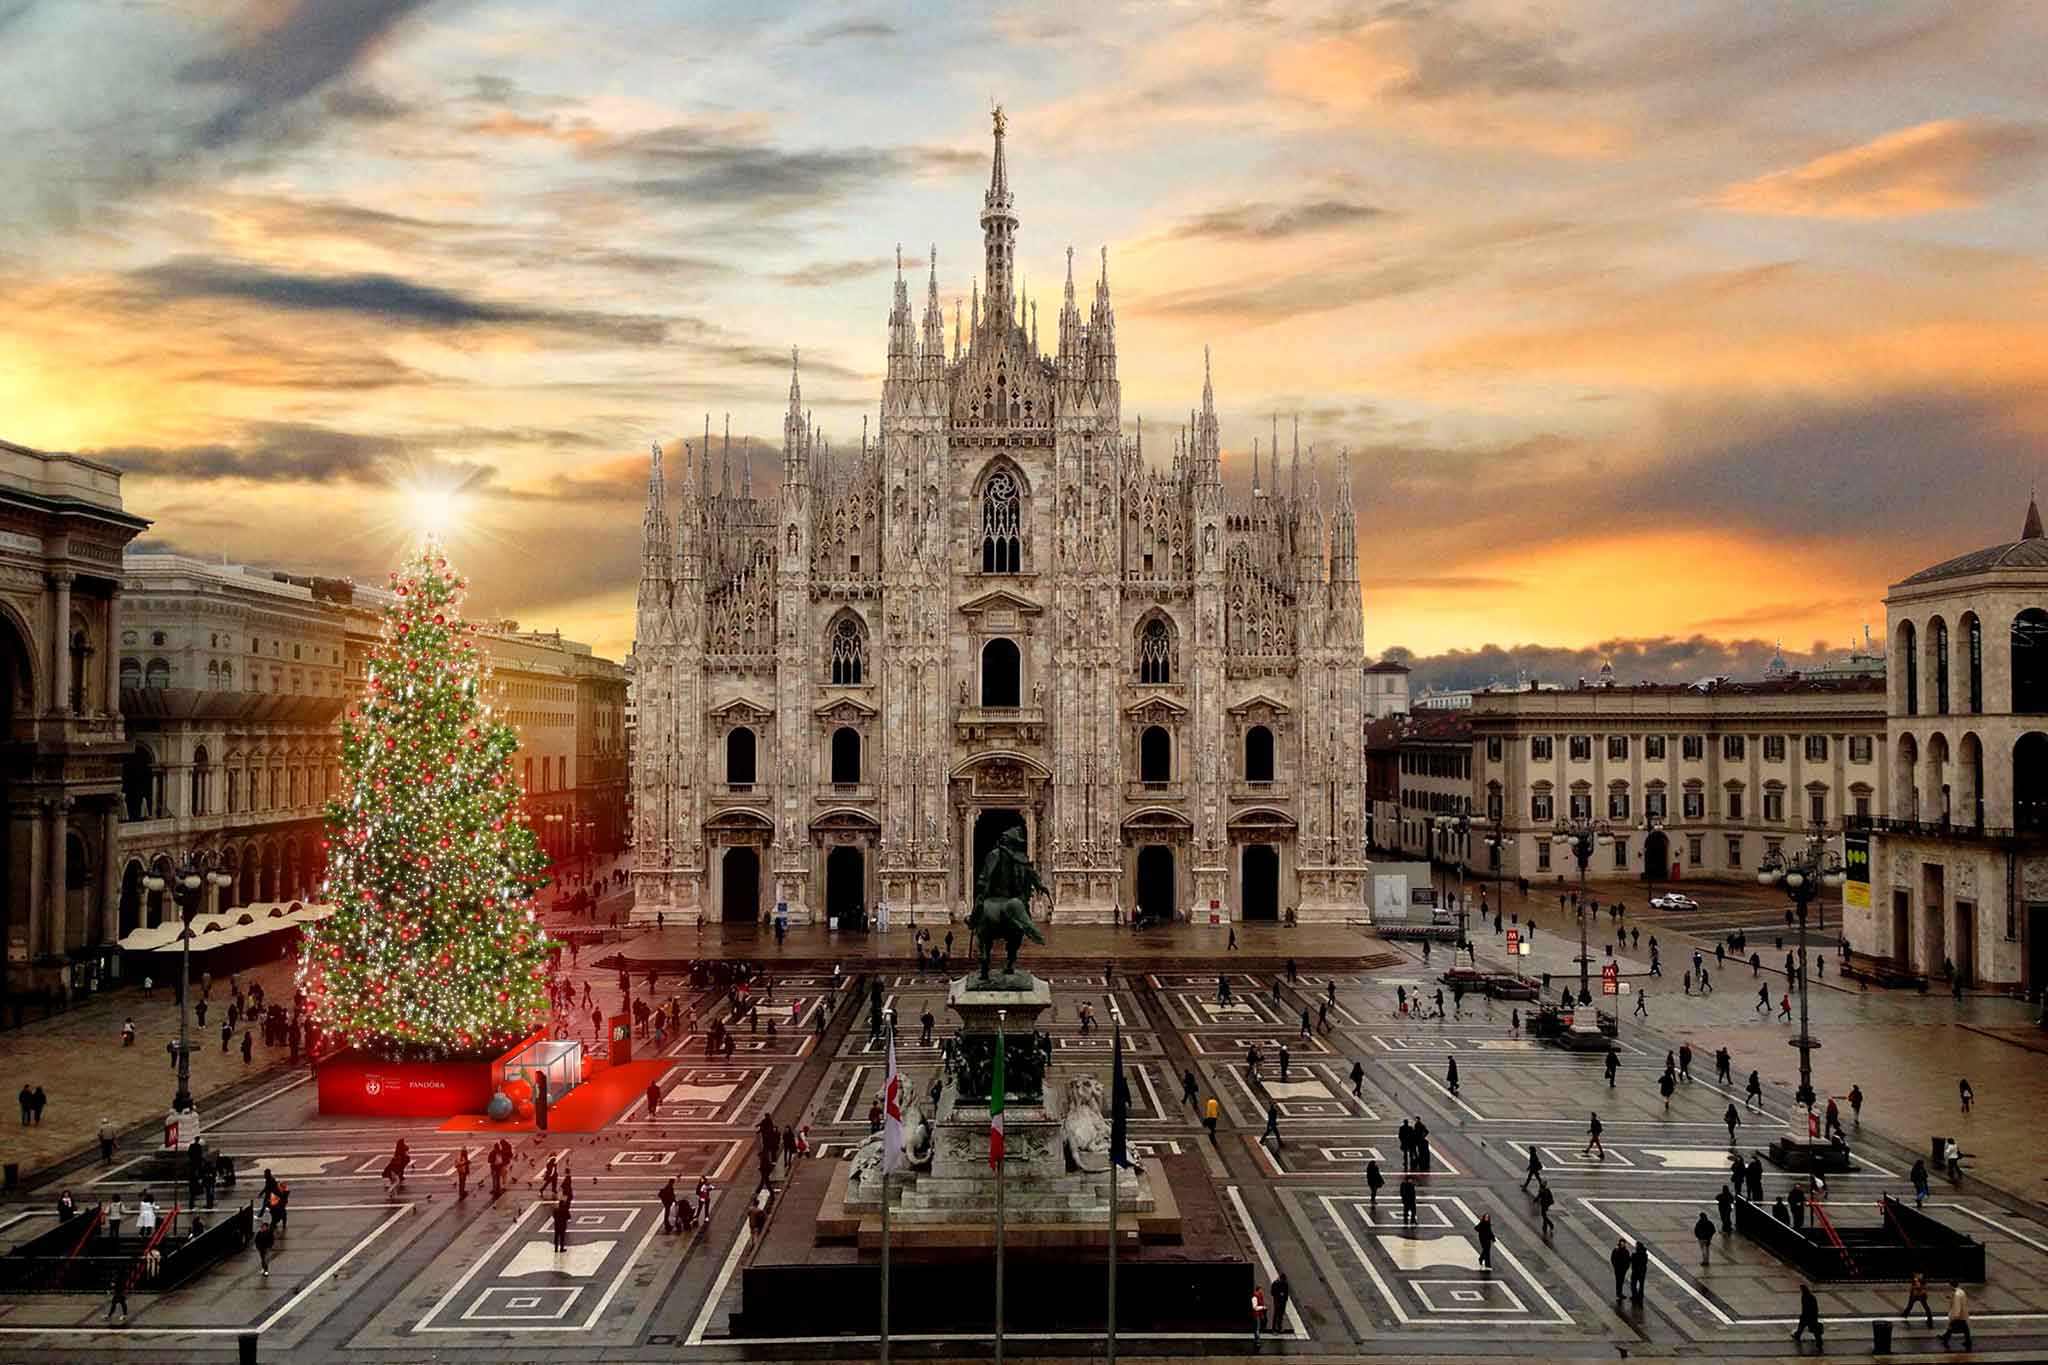 Menu Di Natale A 35 Euro.25 Menu Di Natale Per Vigilia E Pranzo Con Prezzi Da 36 A Milano